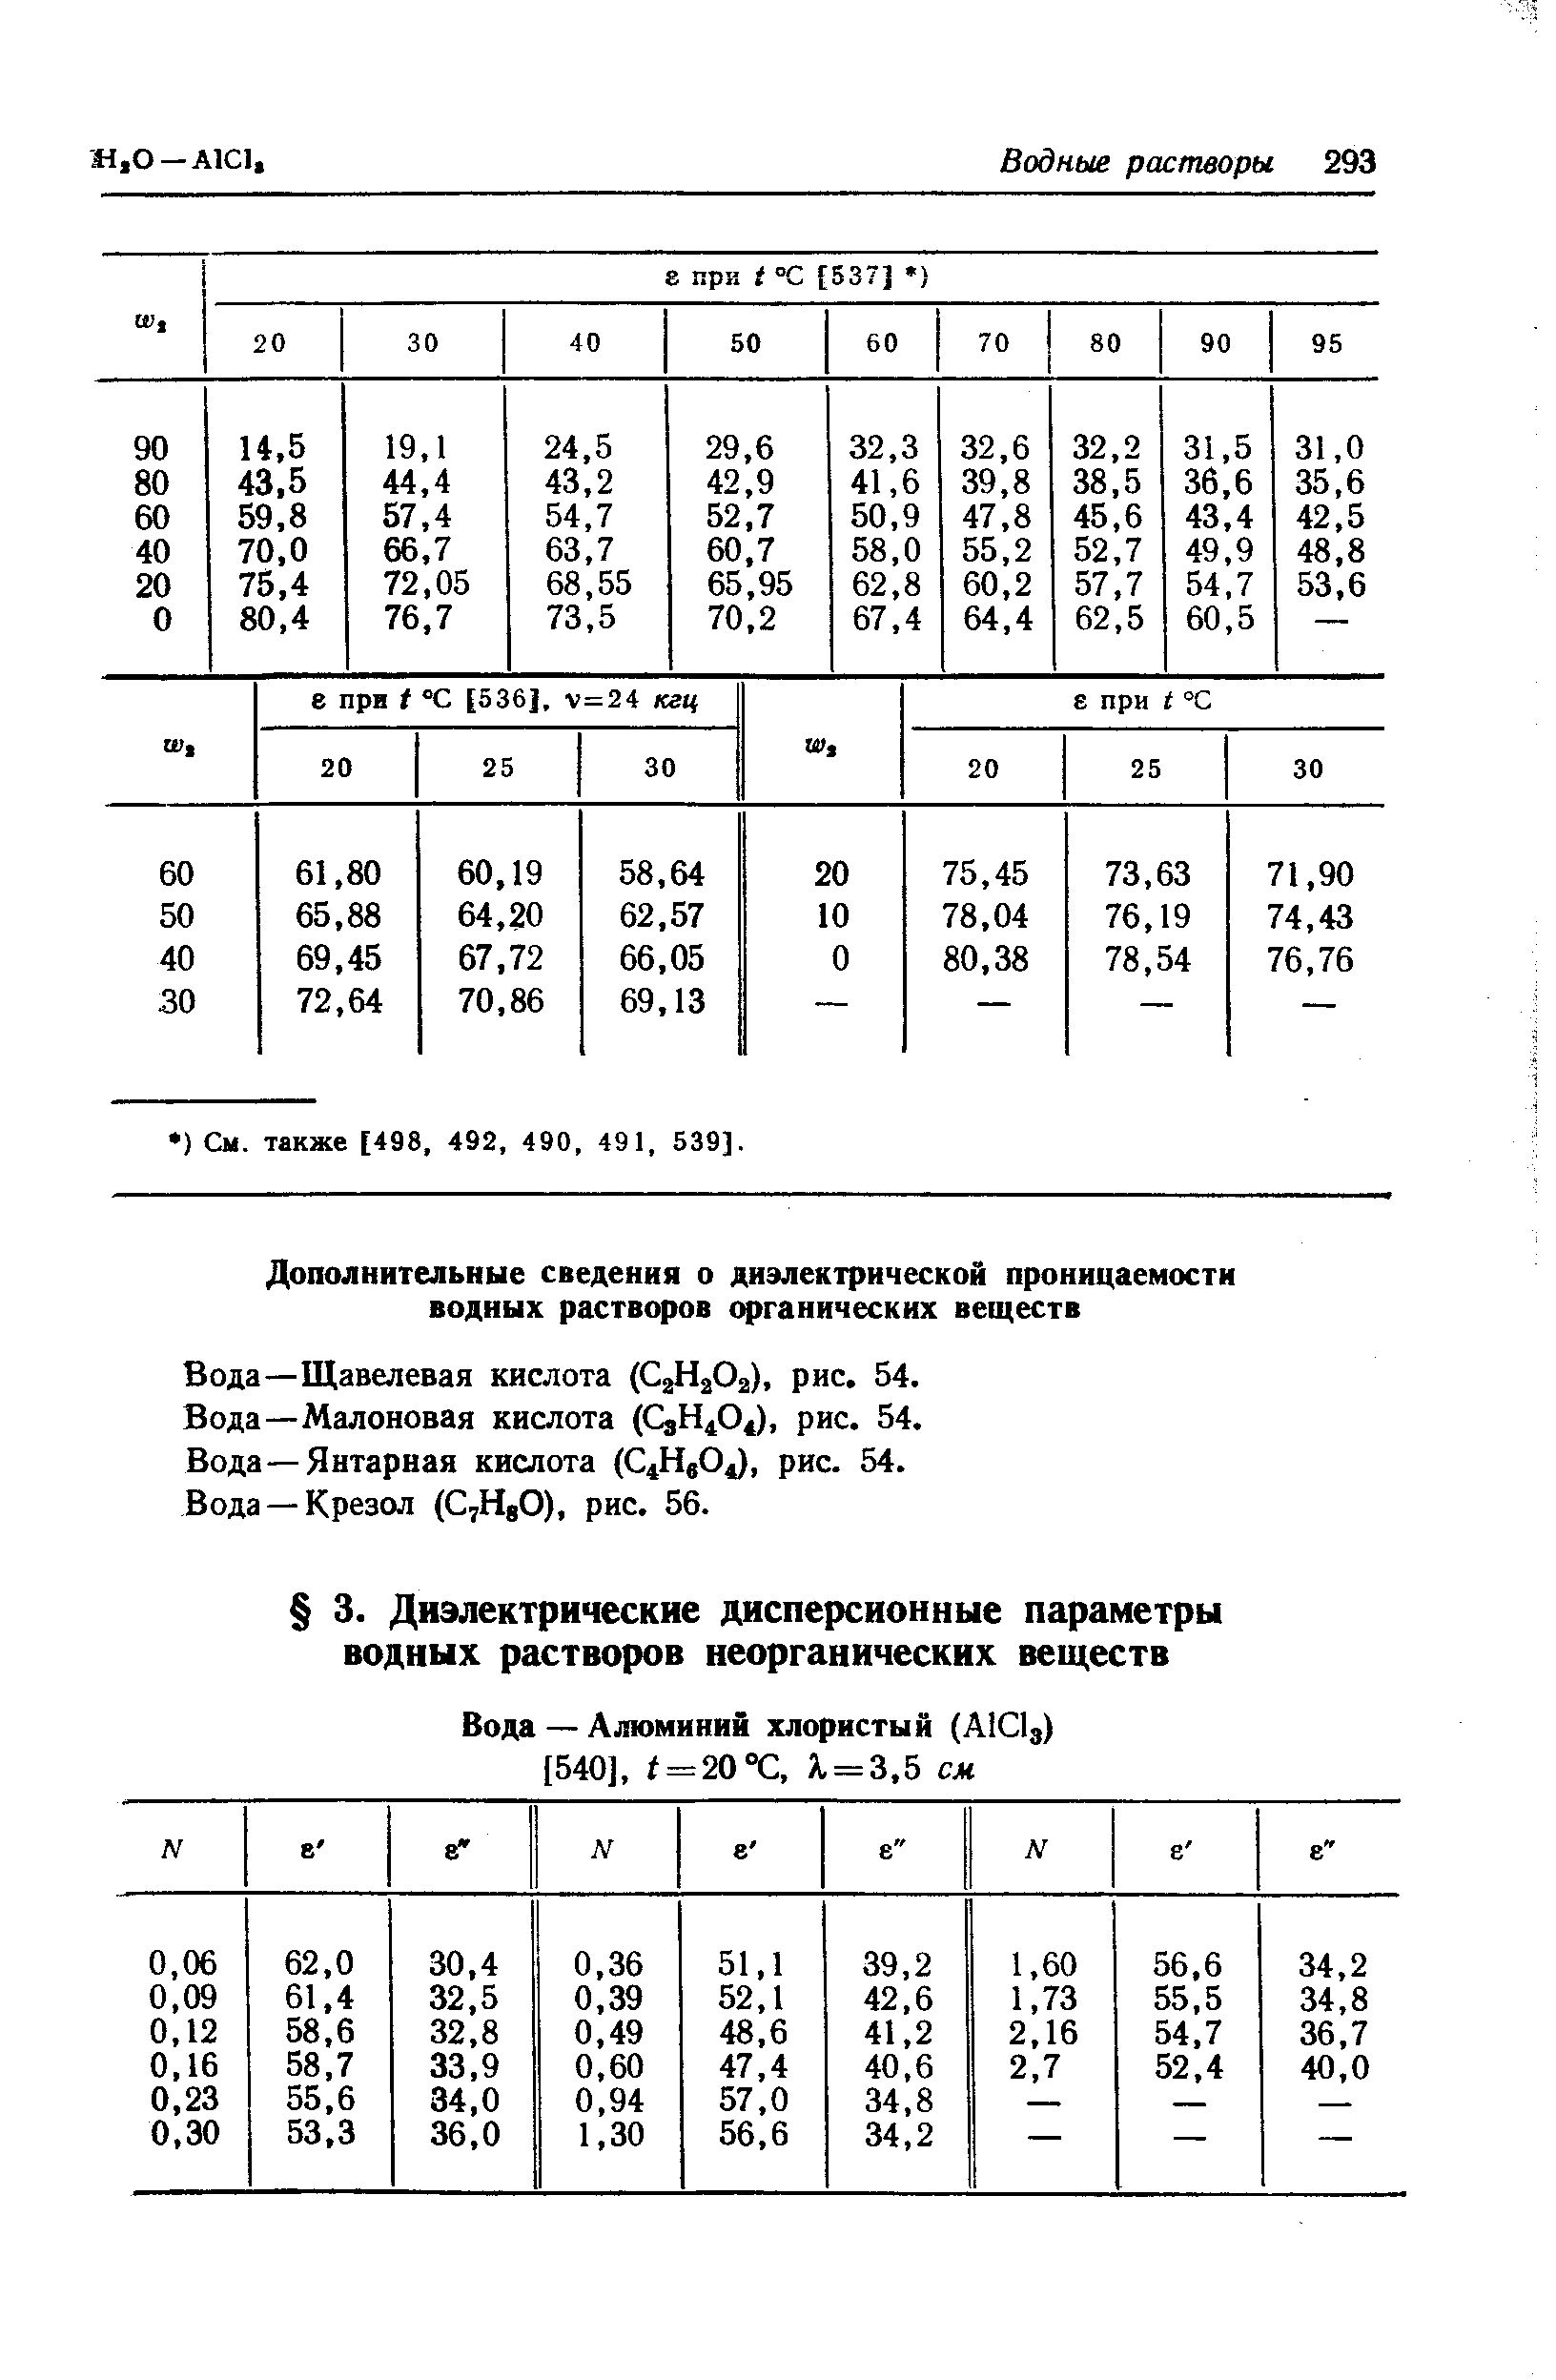 Вода—Малоновая кислота (СзН ), рис, 54.